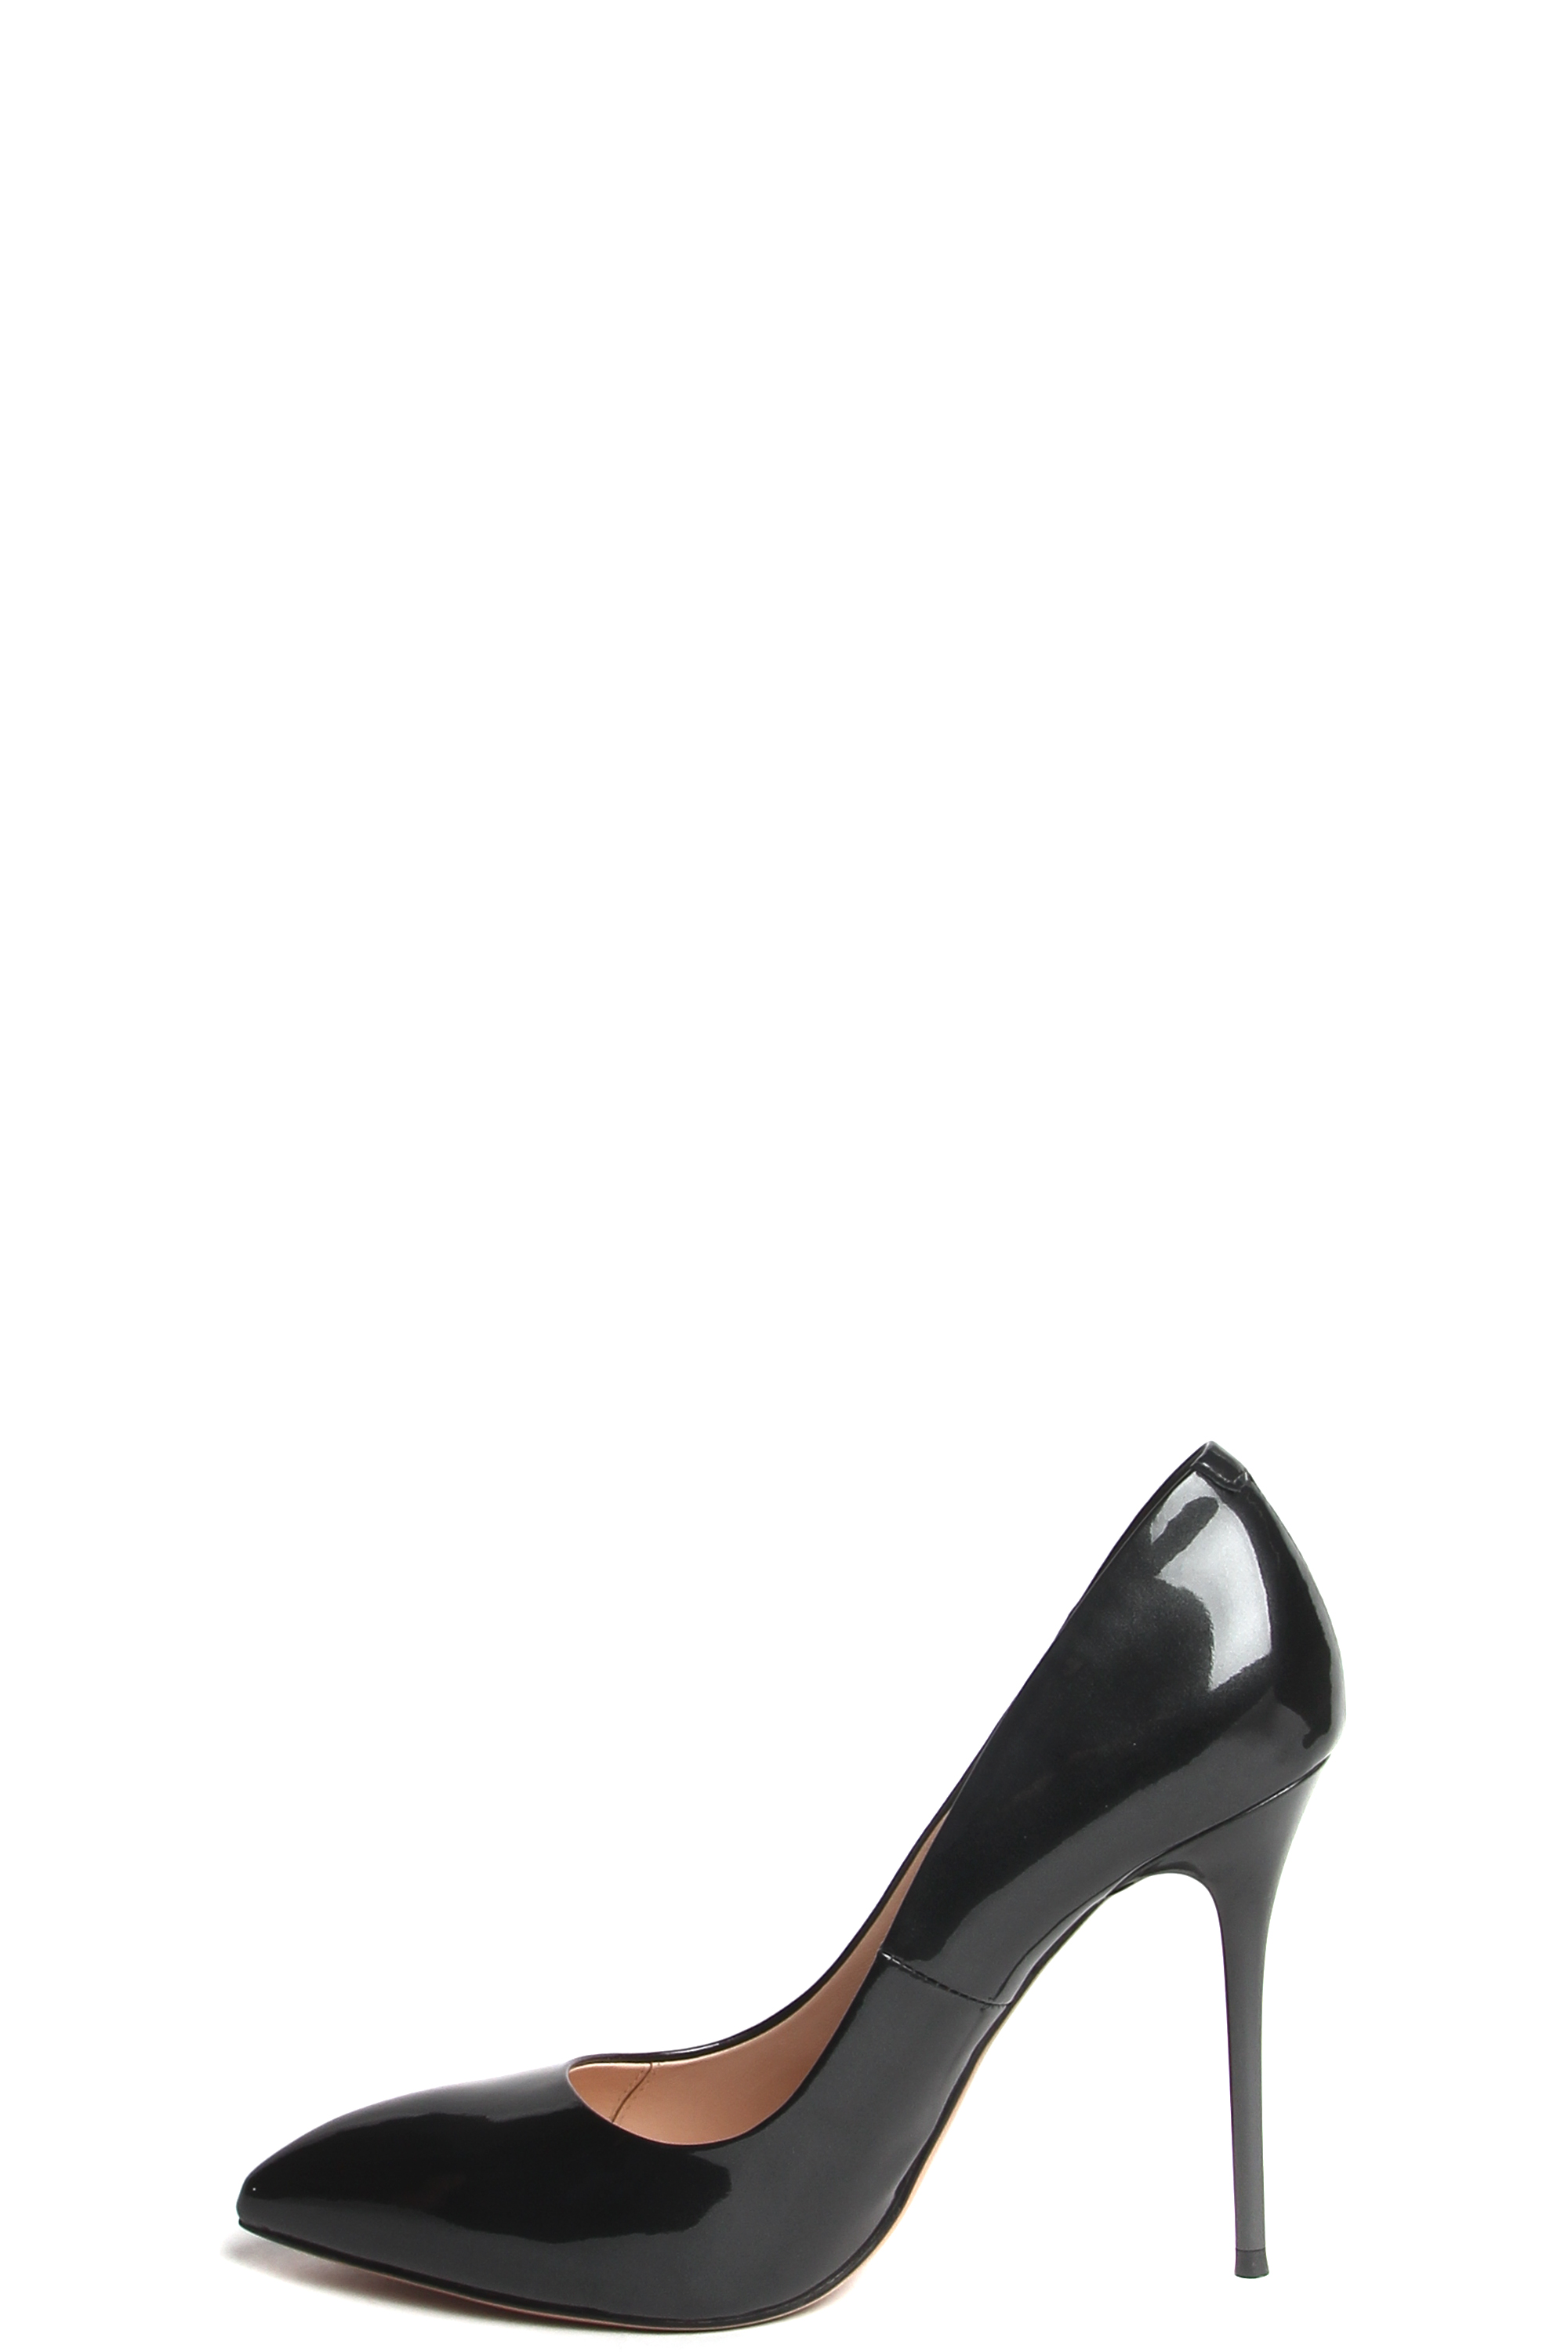 181001-1-7171 туфли лодочки  жен. всесезон. натуральная кожа (лак)/натуральная кожа/термоэластопласт серый Milana